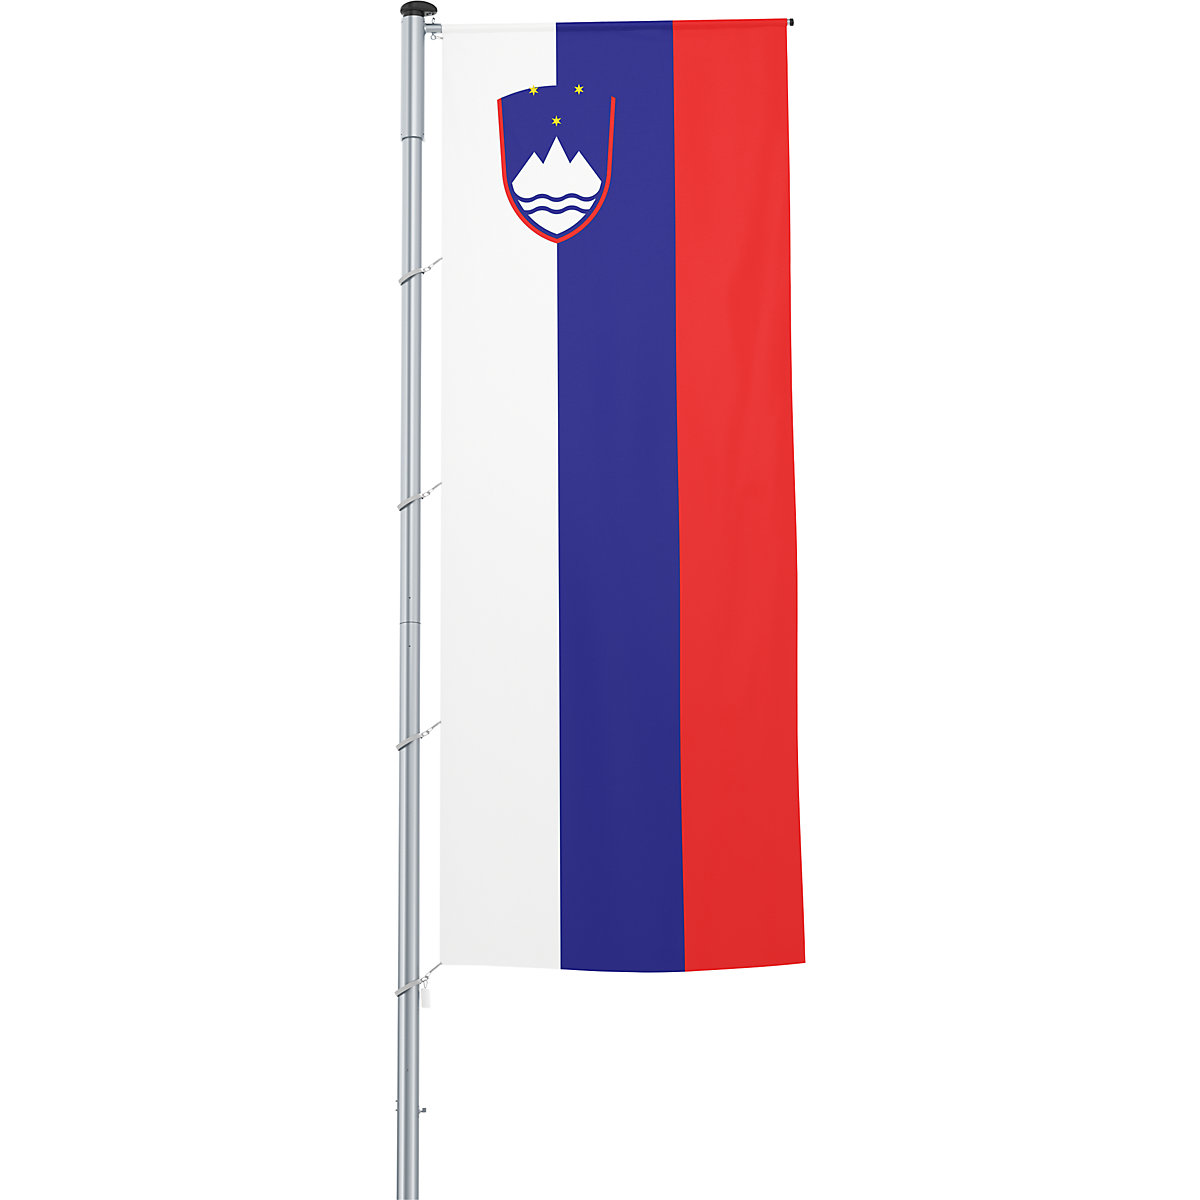 Mannus – Bandera con pluma/bandera del país, formato 1,2 x 3 m, Eslovenia